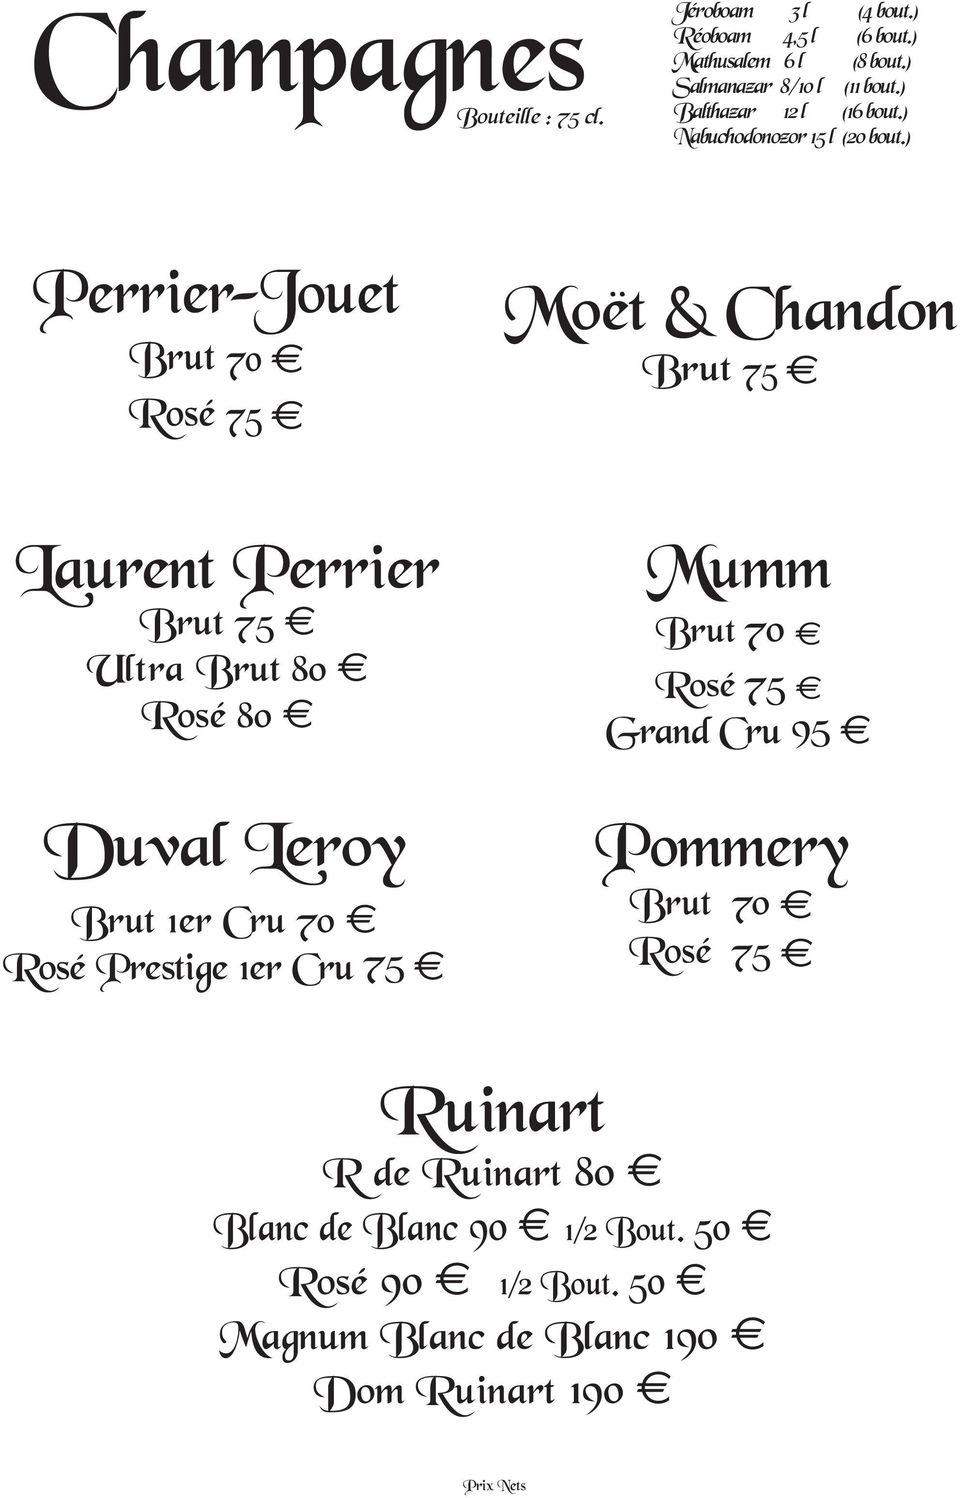 ) Perrier-Jouet Brut 70 Rosé 75 Laurent Perrier Brut 75 Ultra Brut 80 Rosé 80 Duval Leroy Brut 1er Cru 70 Rosé Prestige 1er Cru